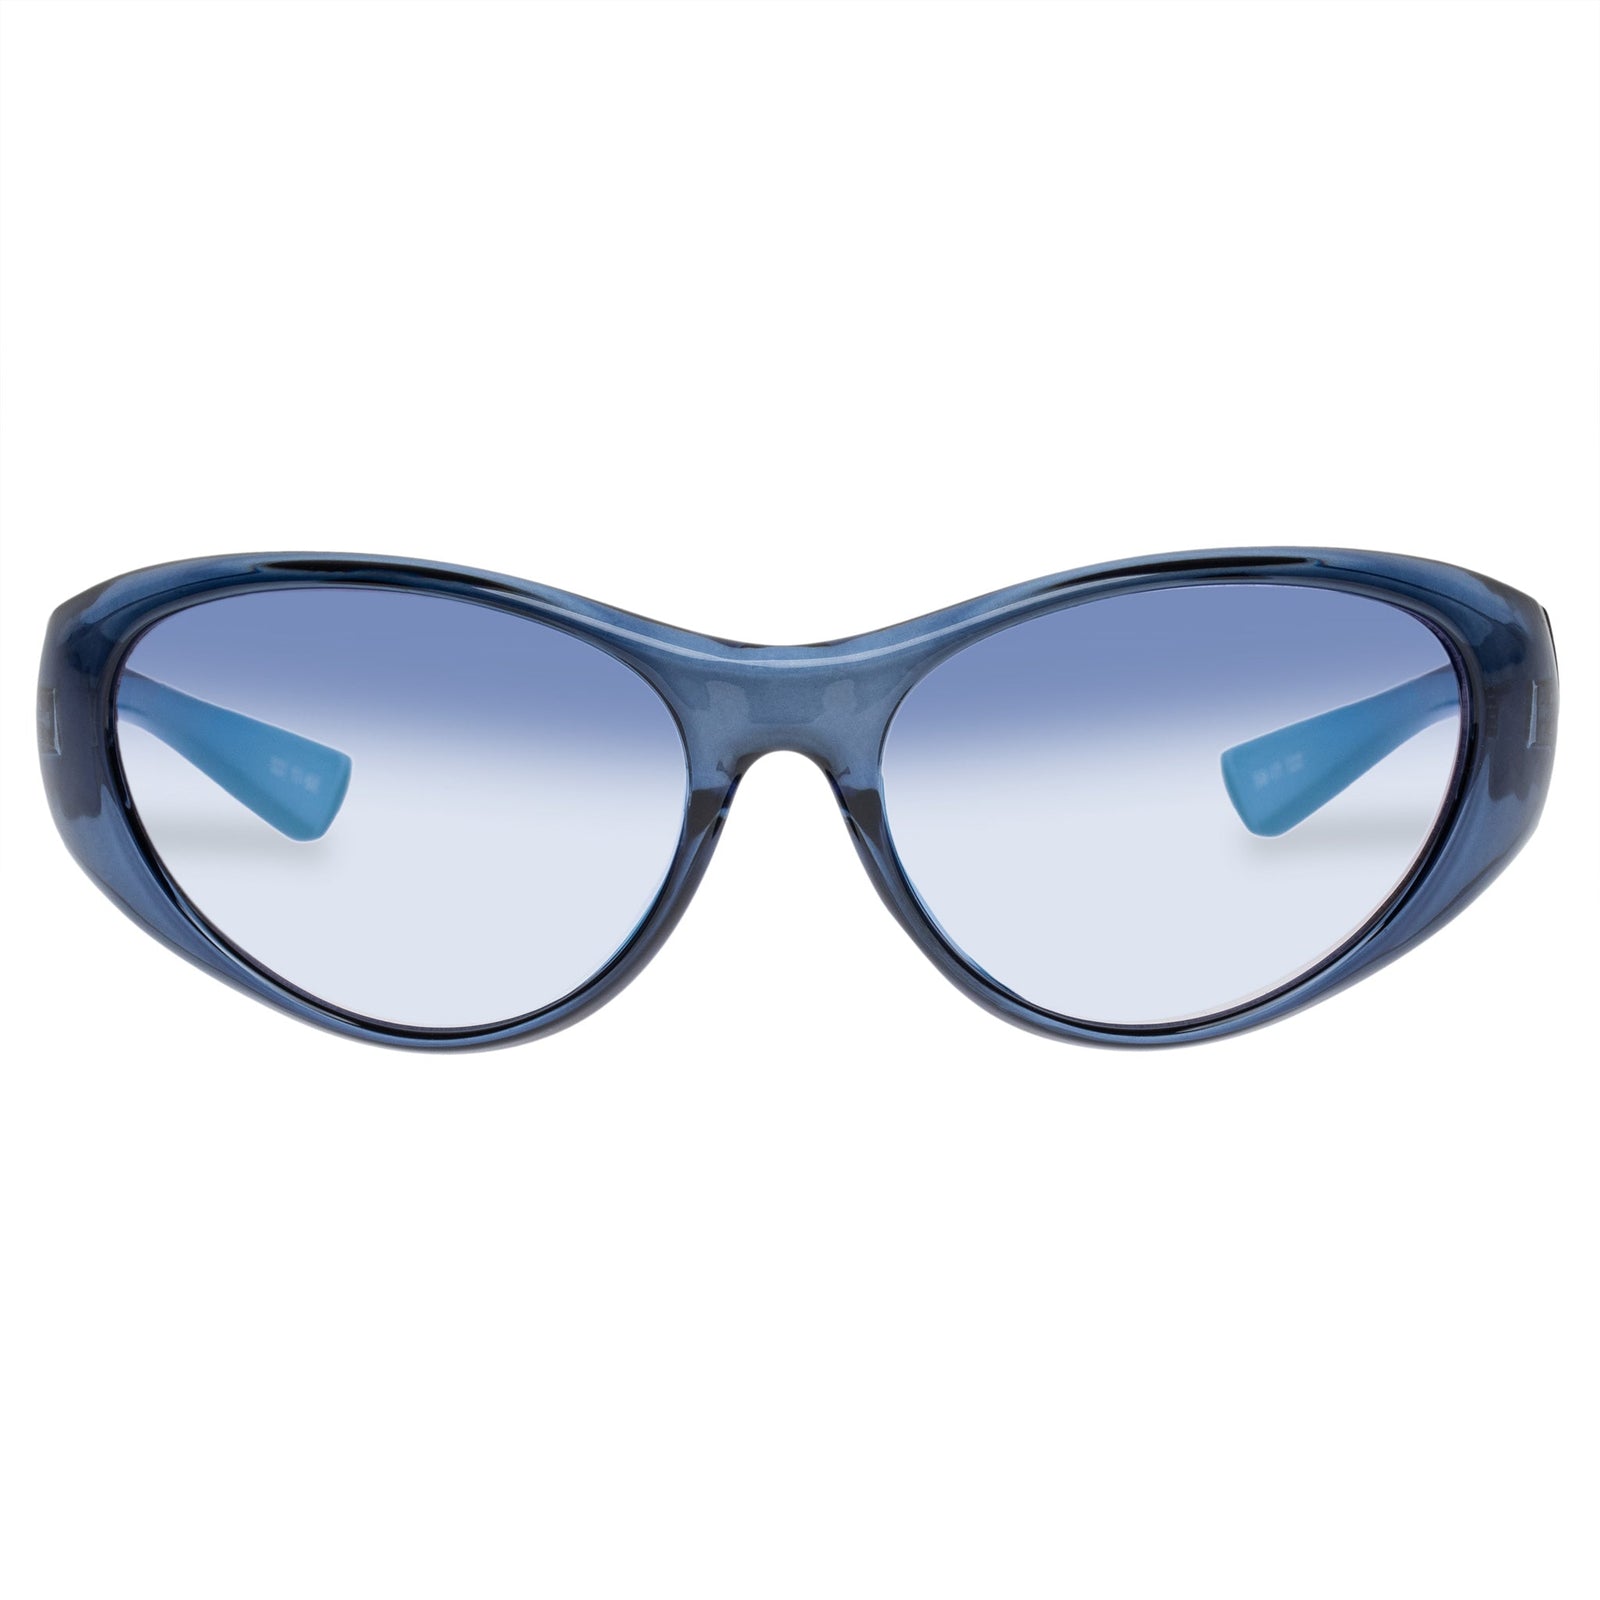 Le Specs - Dotcom Ltd Edt, Wrap Sunglasses, Navy, Large